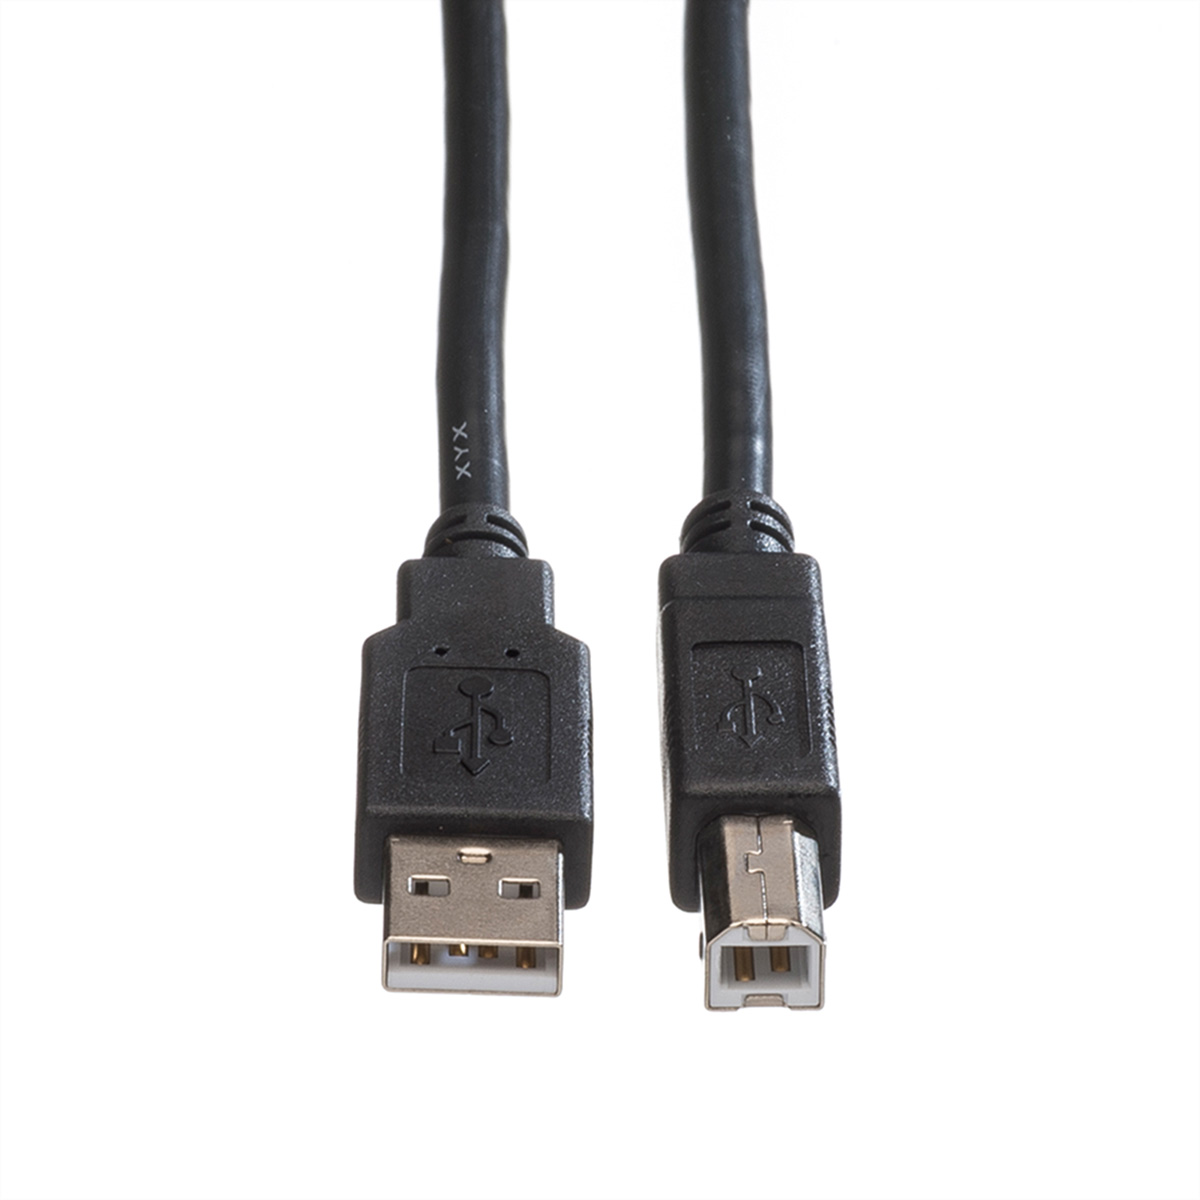 2.0 USB USB 2.0 Kabel ROLINE Kabel